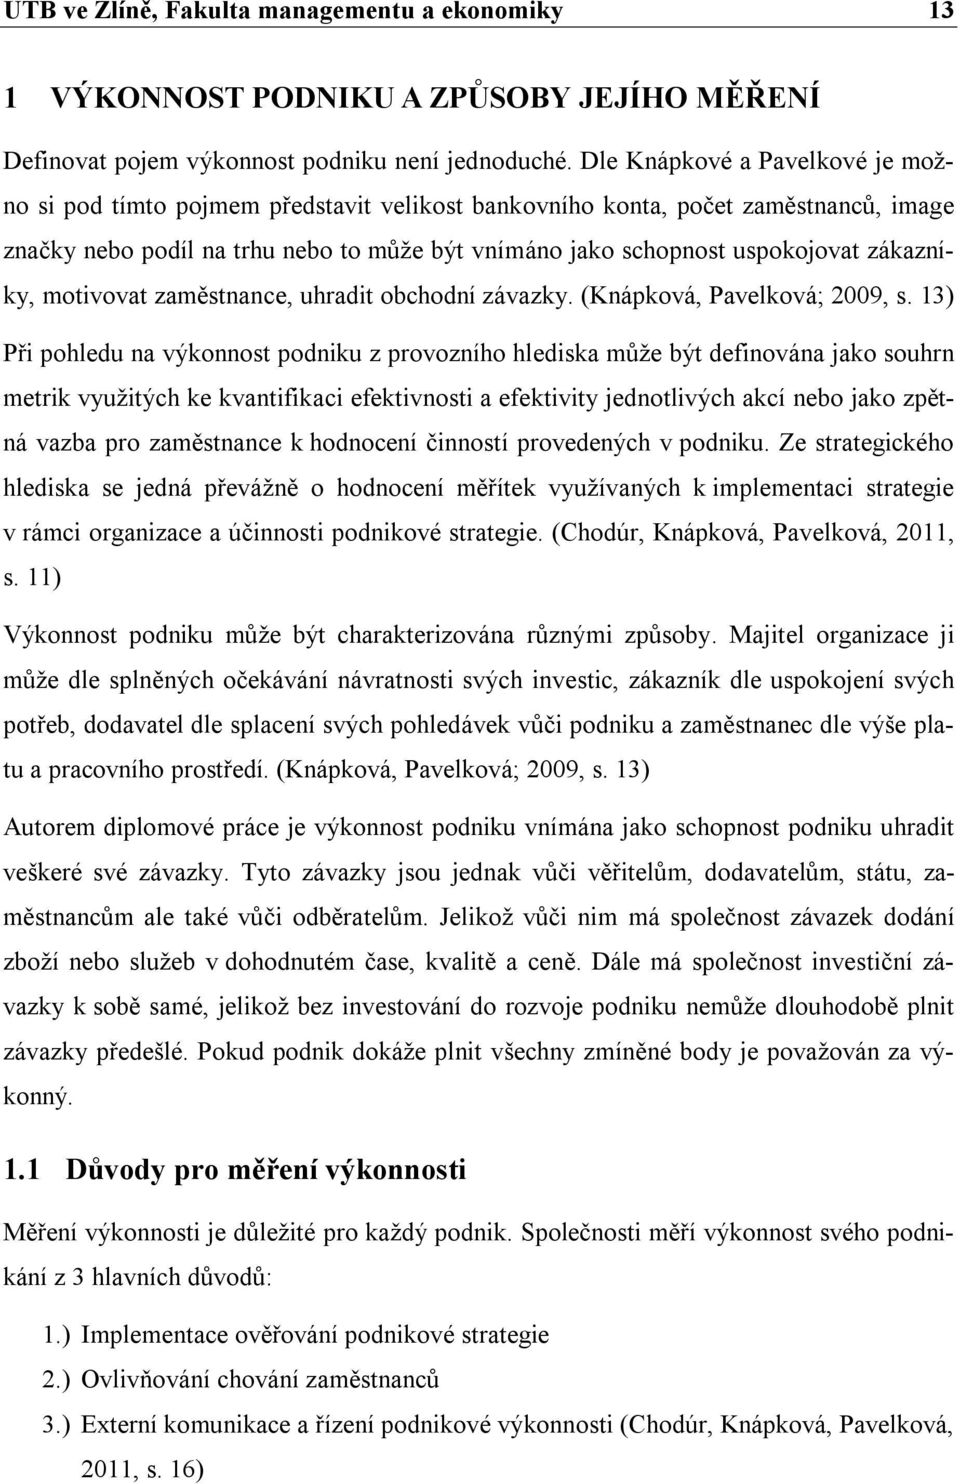 zákazníky, motivovat zaměstnance, uhradit obchodní závazky. (Knápková, Pavelková; 2009, s.